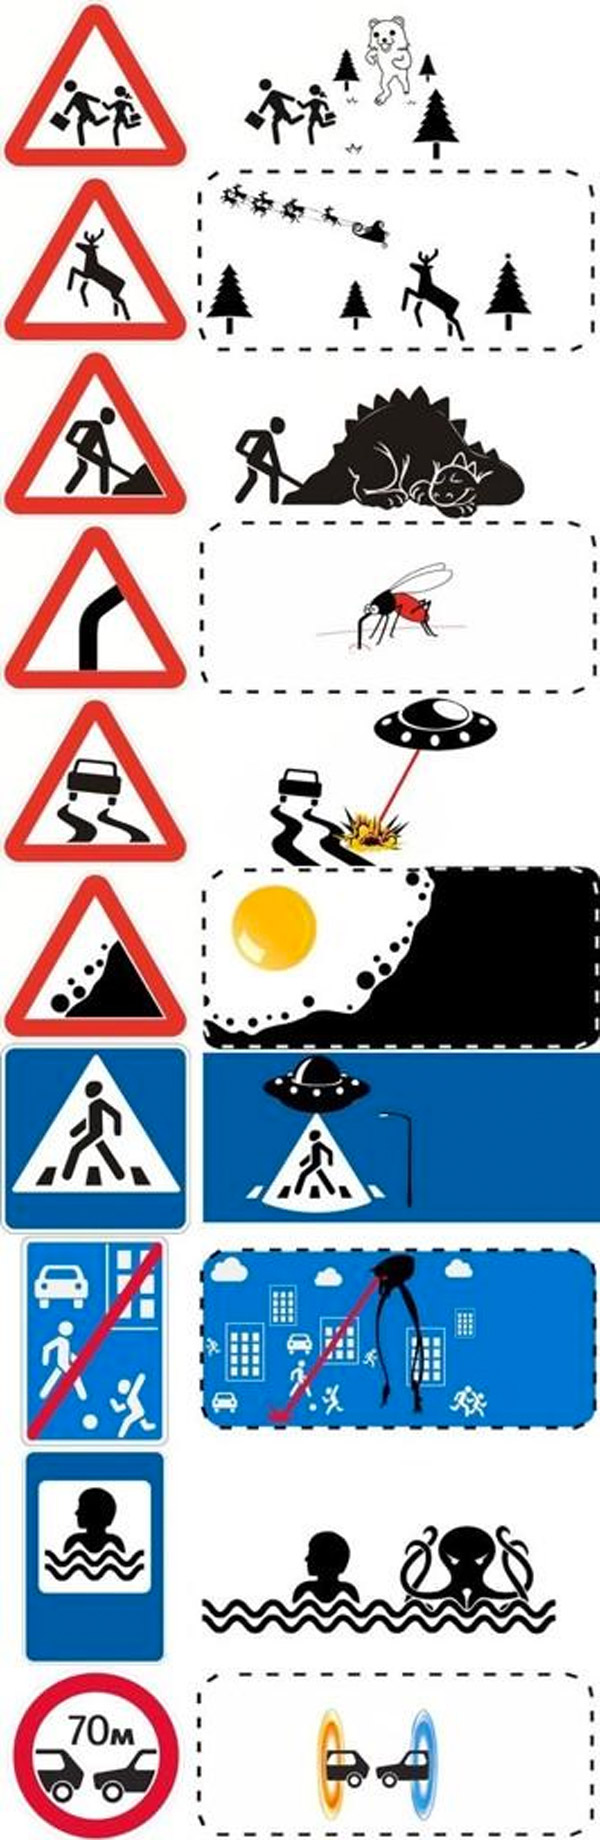 El significado de las señales de tráfico